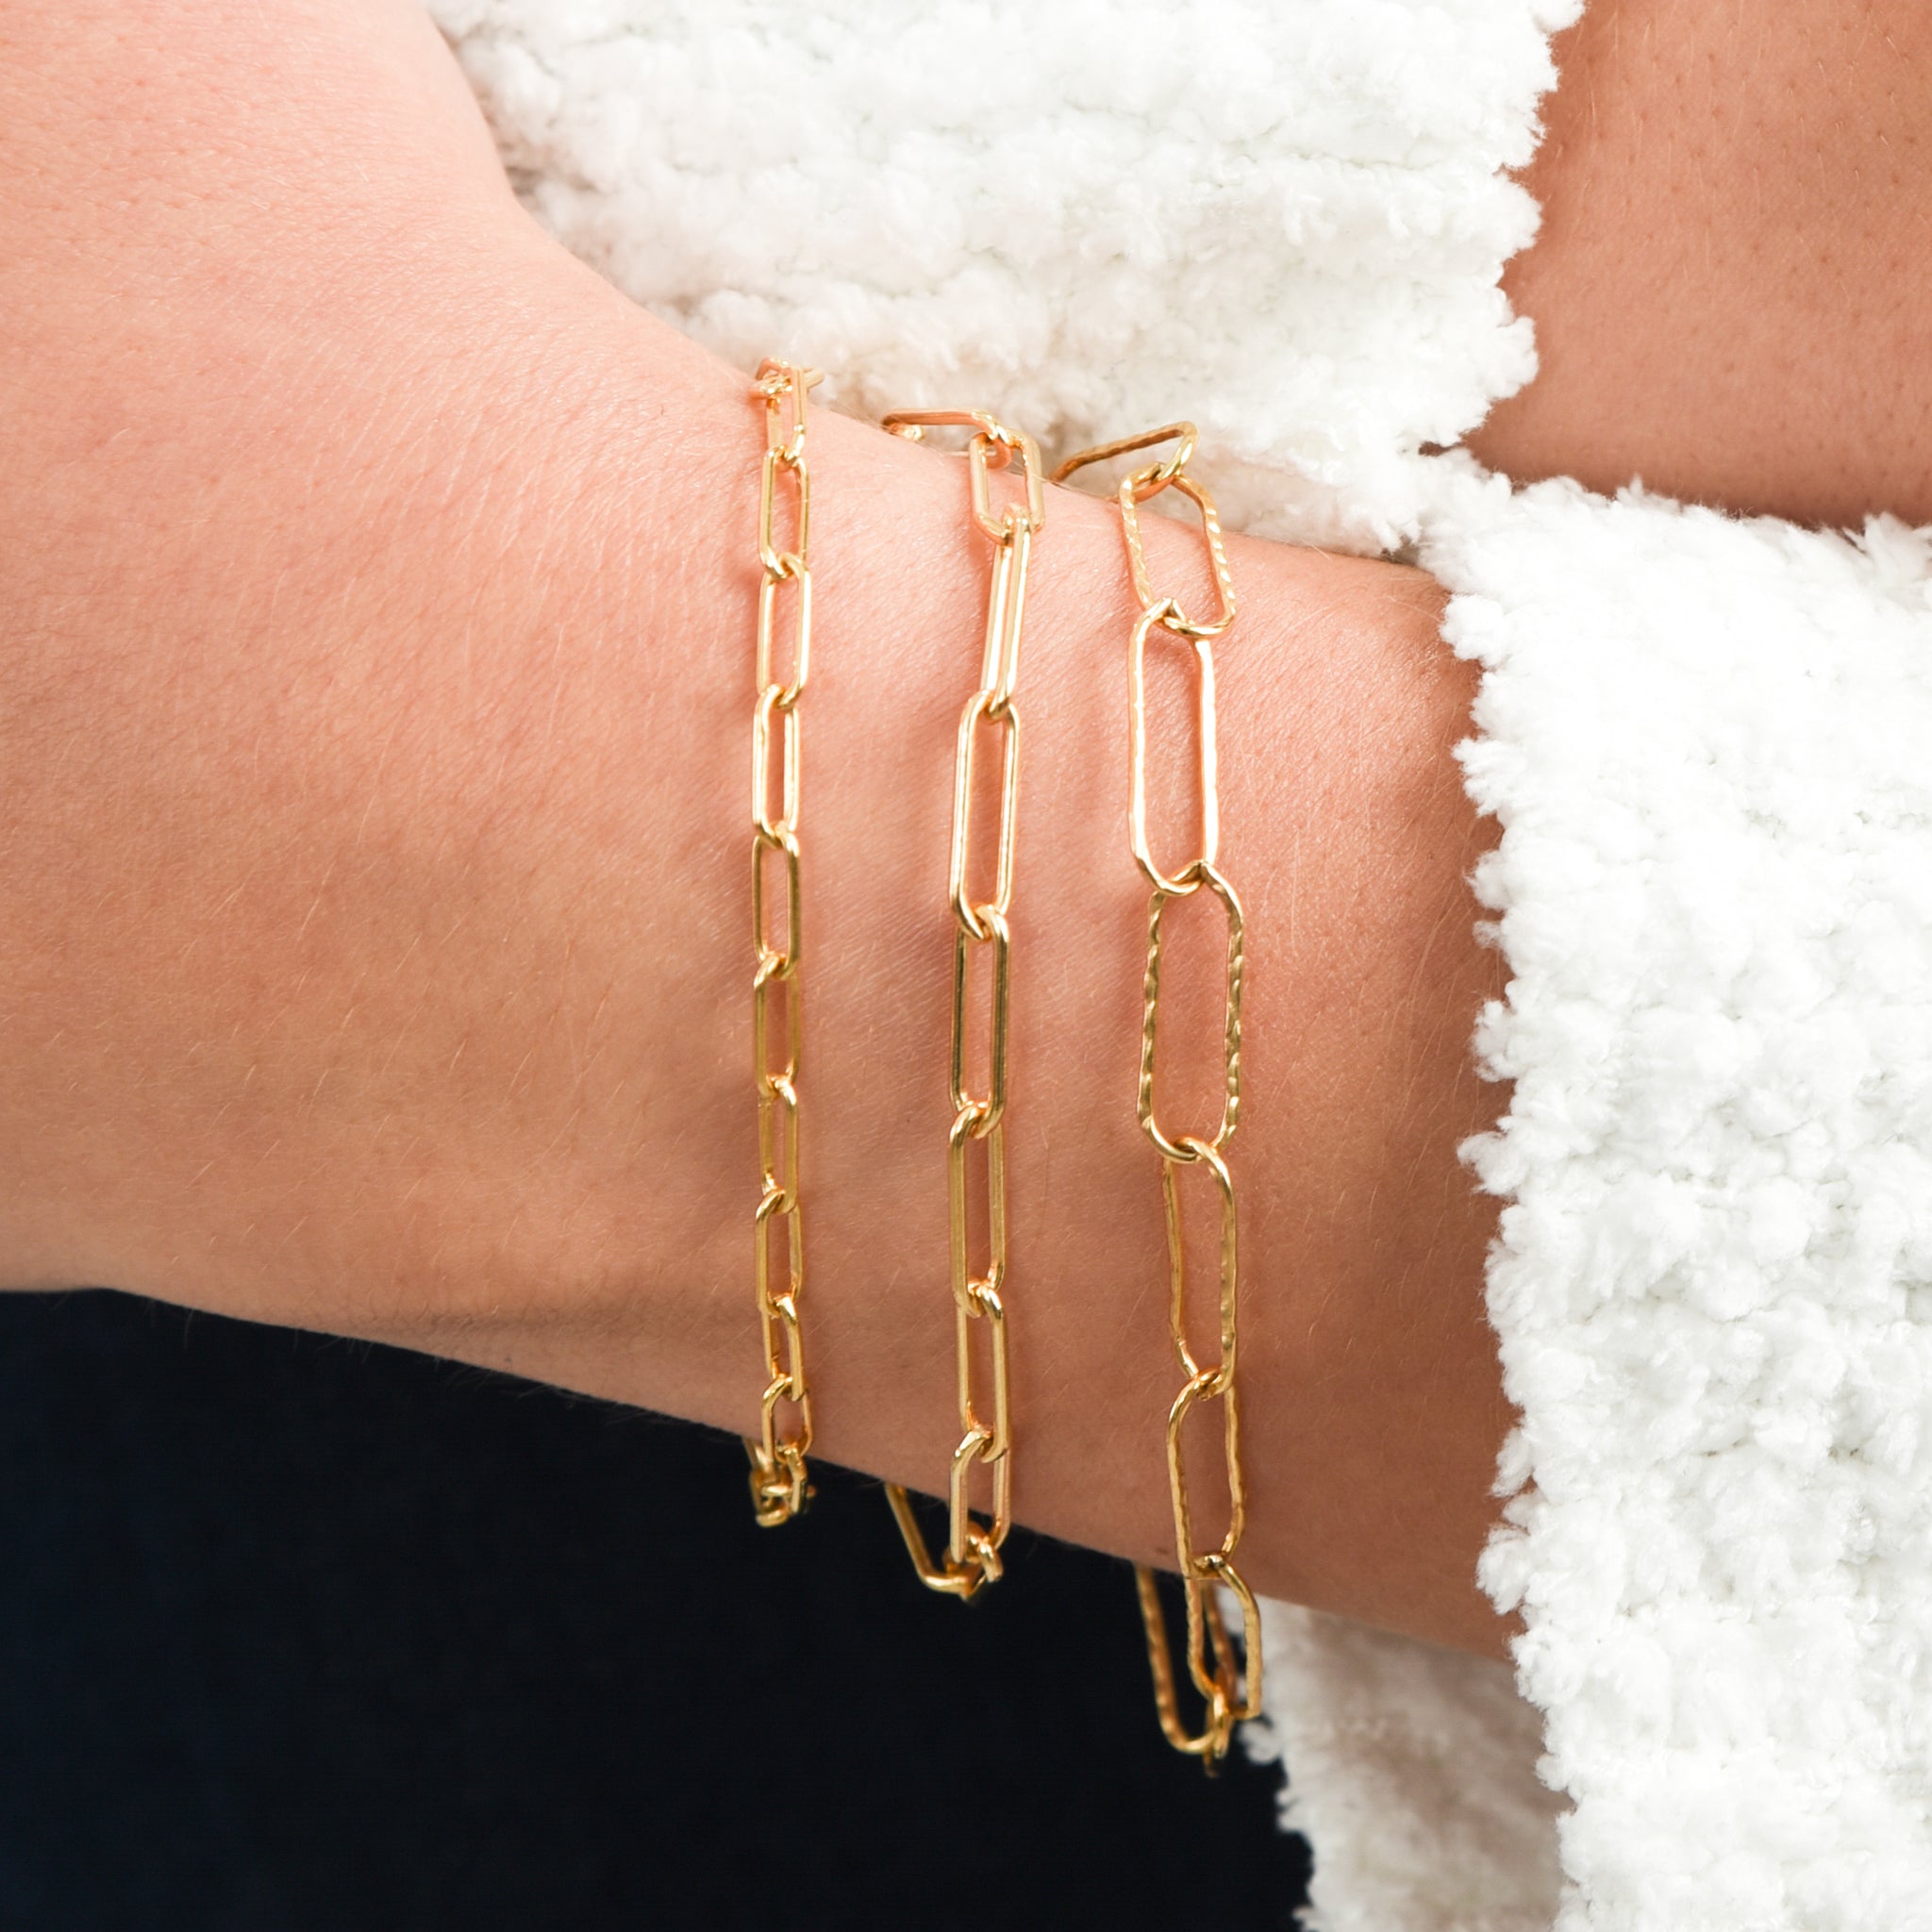 14k Gold Filled Paper Clip Bracelet Set - Jewel Ya